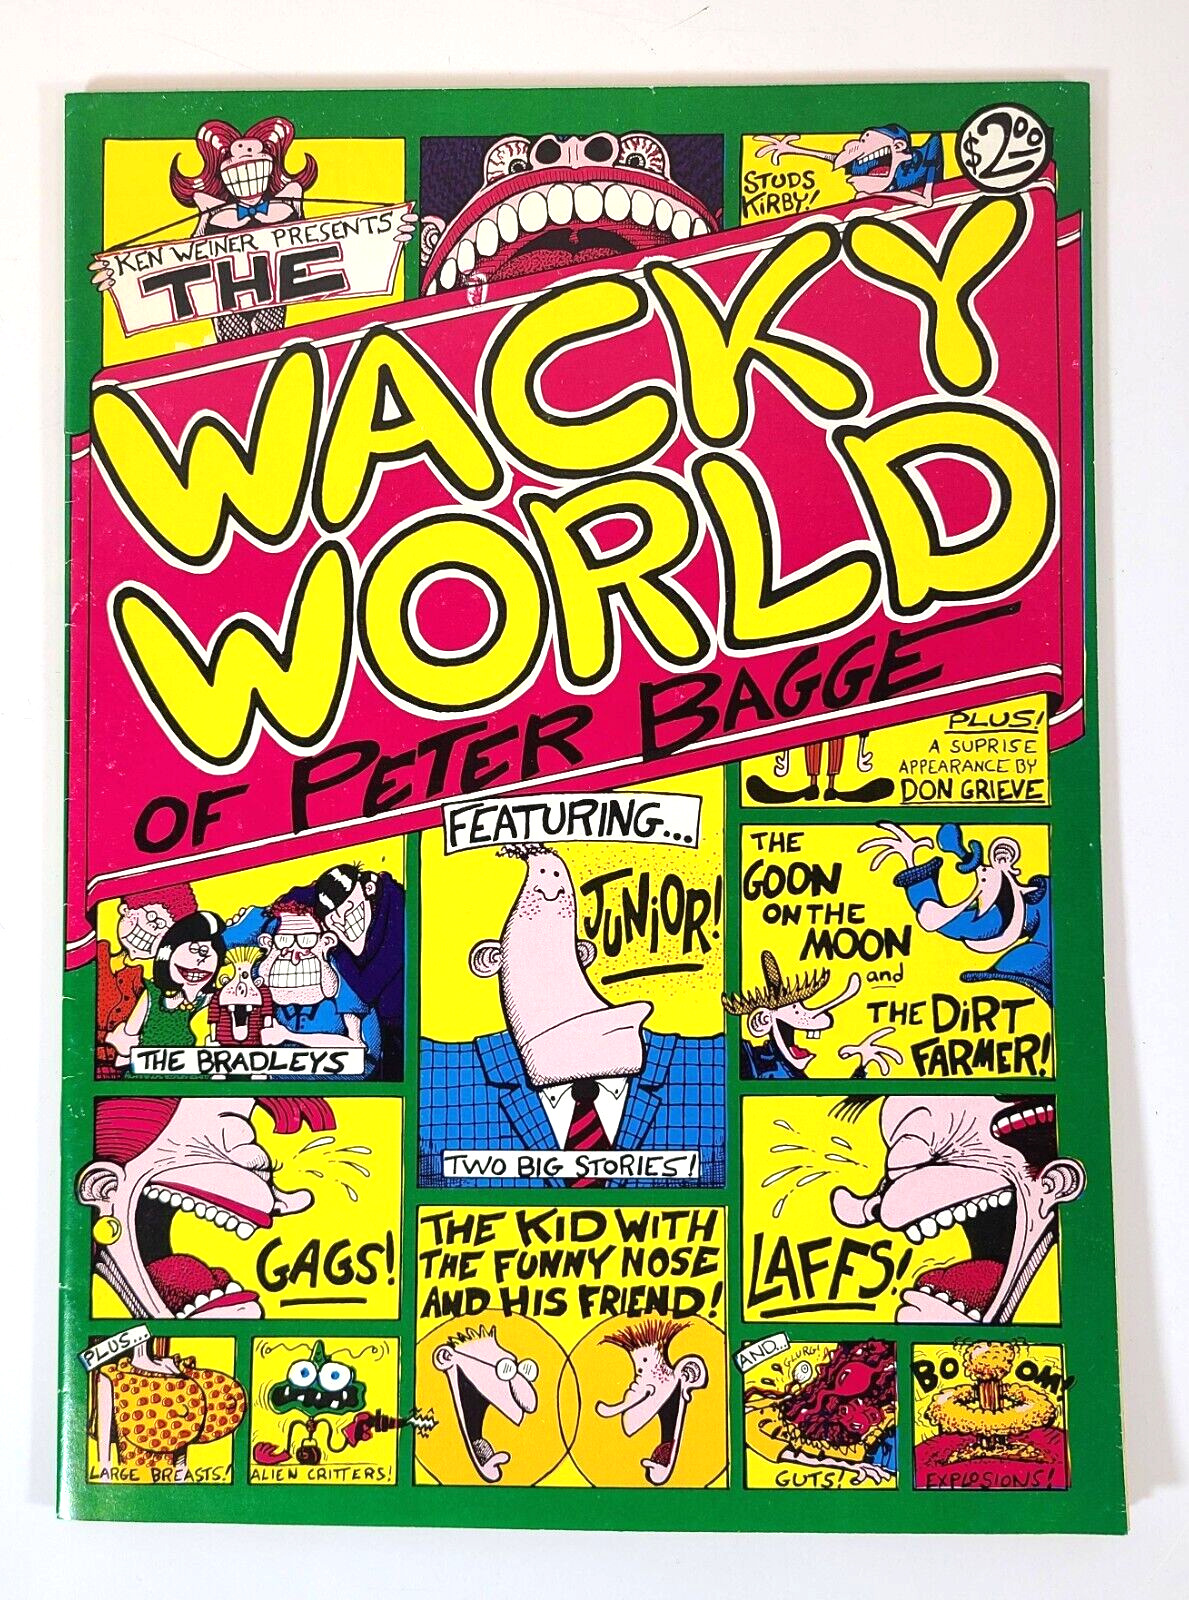 Ken Wiener Presents The Wacky World of  Peter Bagge - 1982